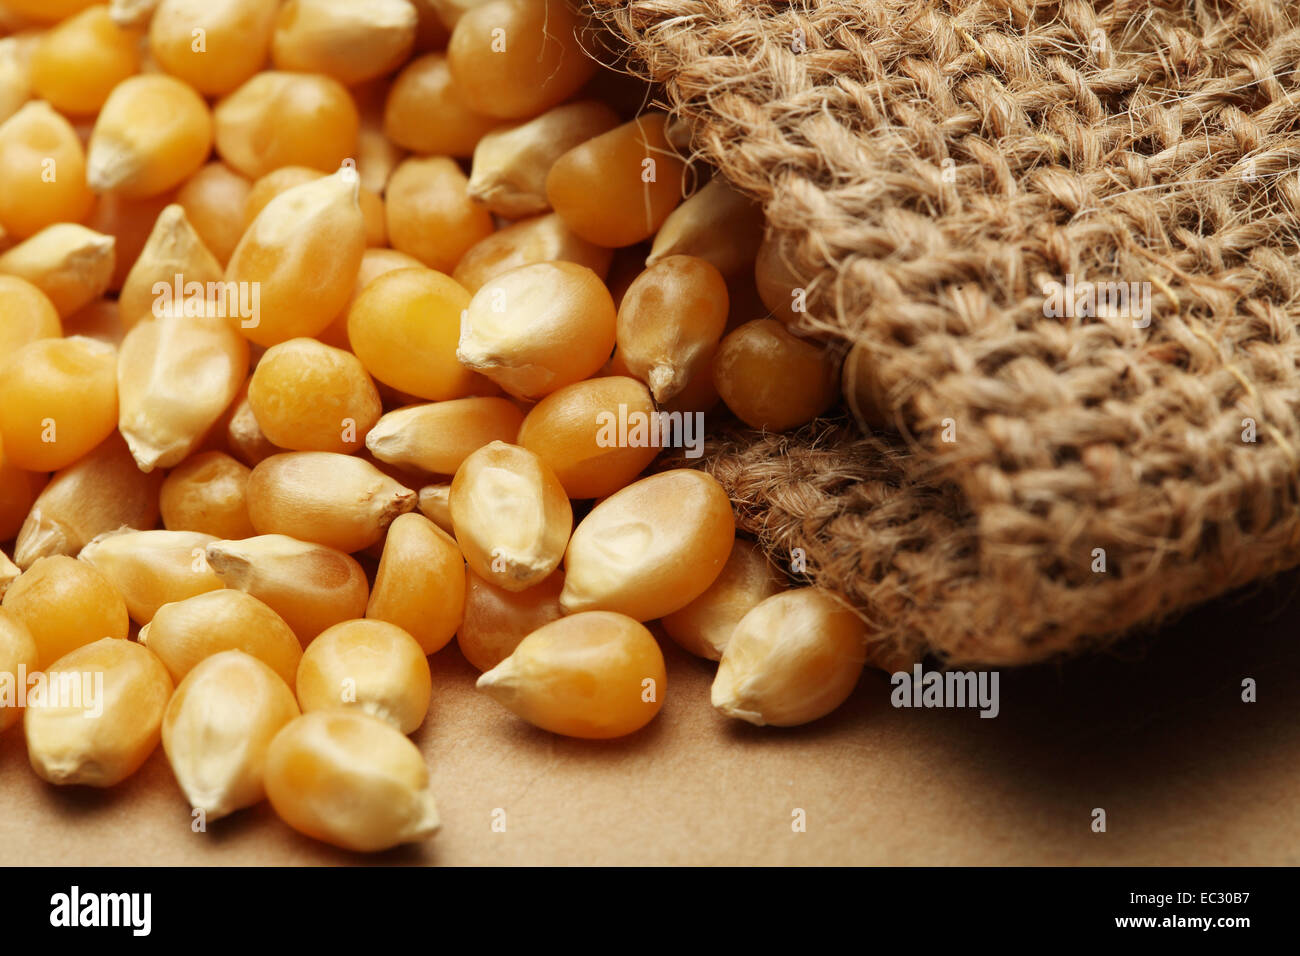 The grain corn in small sack Stock Photo